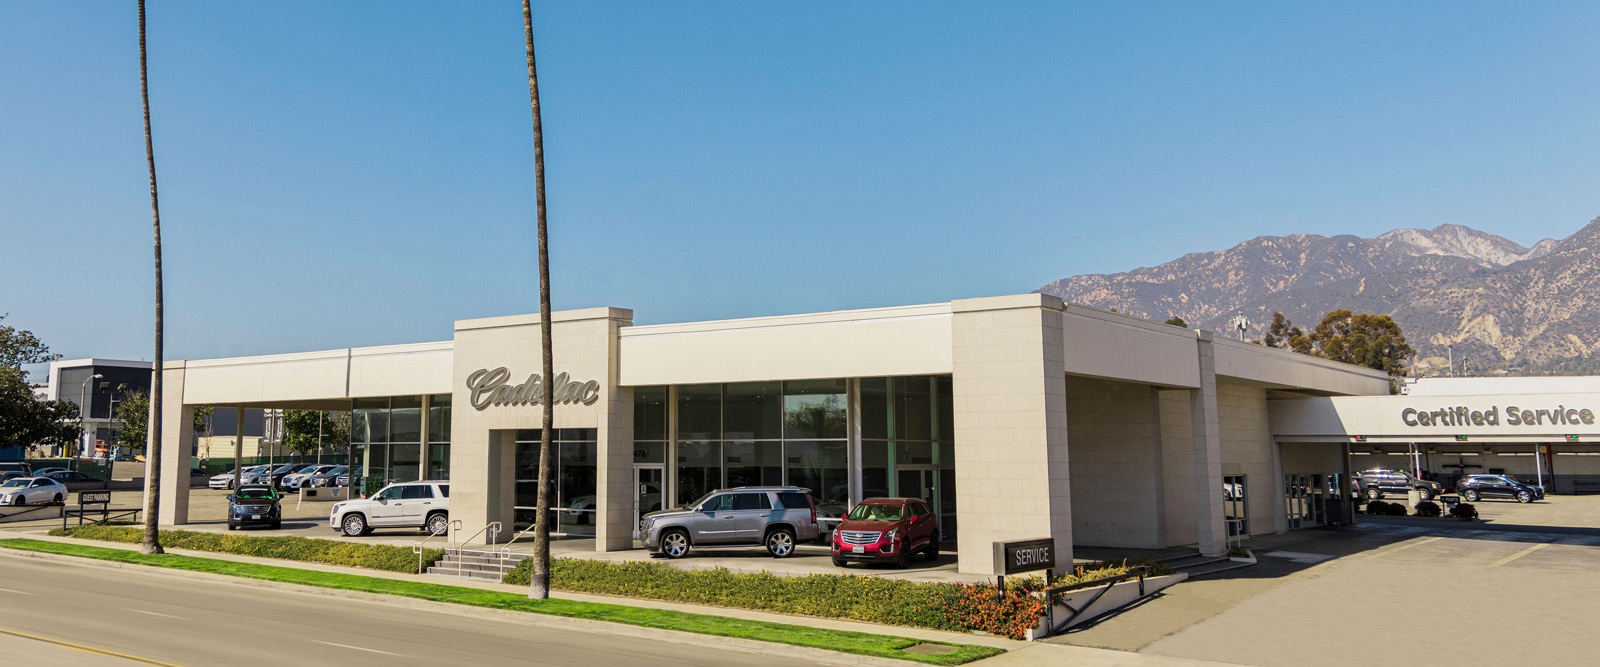 US Property Trust - Cadillac Pasadena